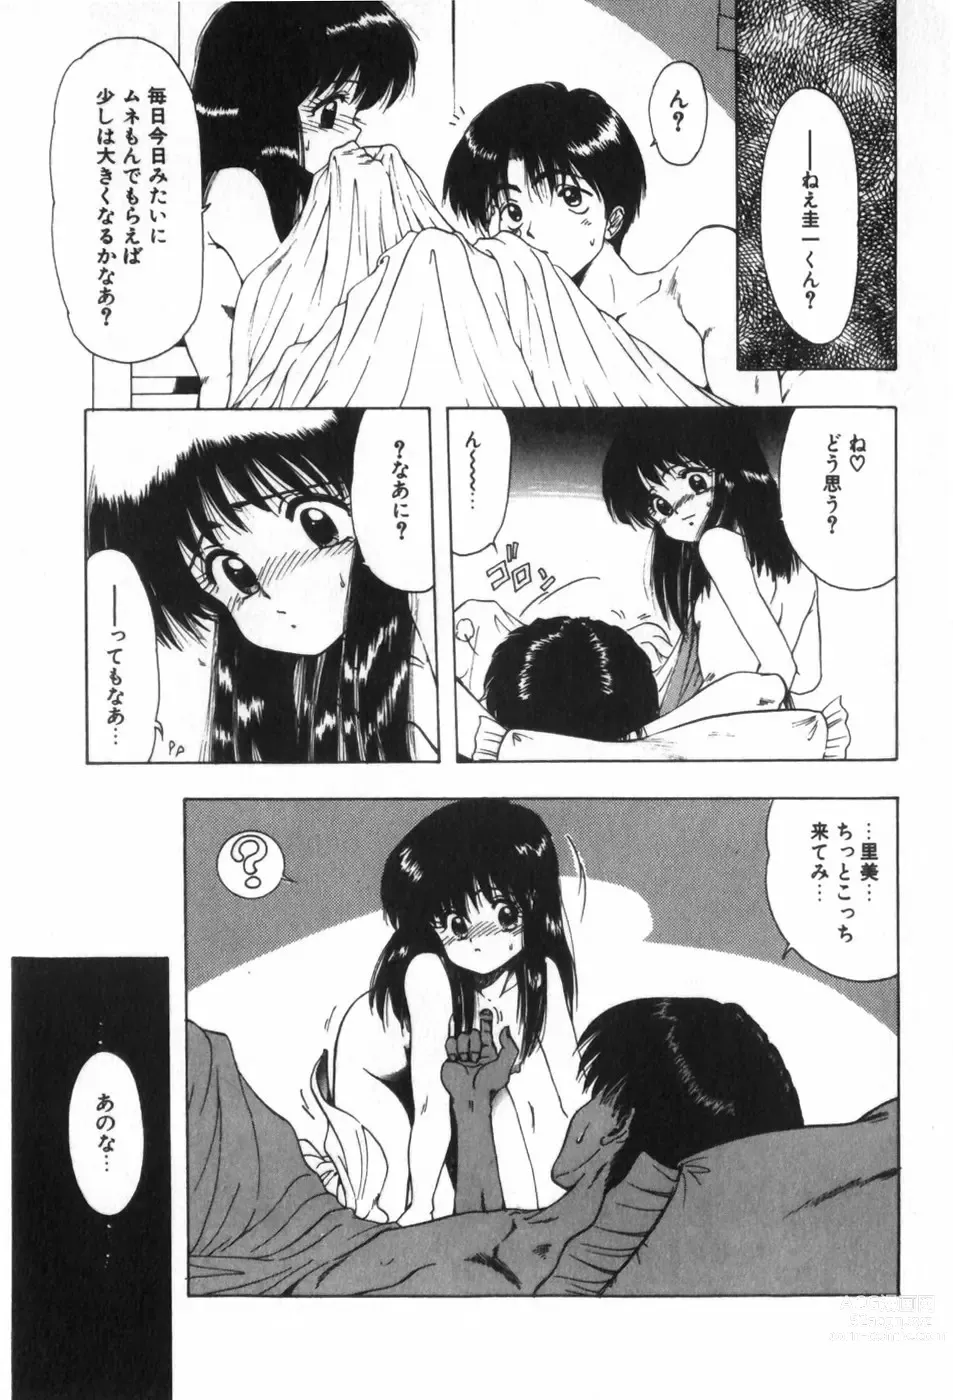 Page 25 of manga Funi Funi Hanjuku Musume